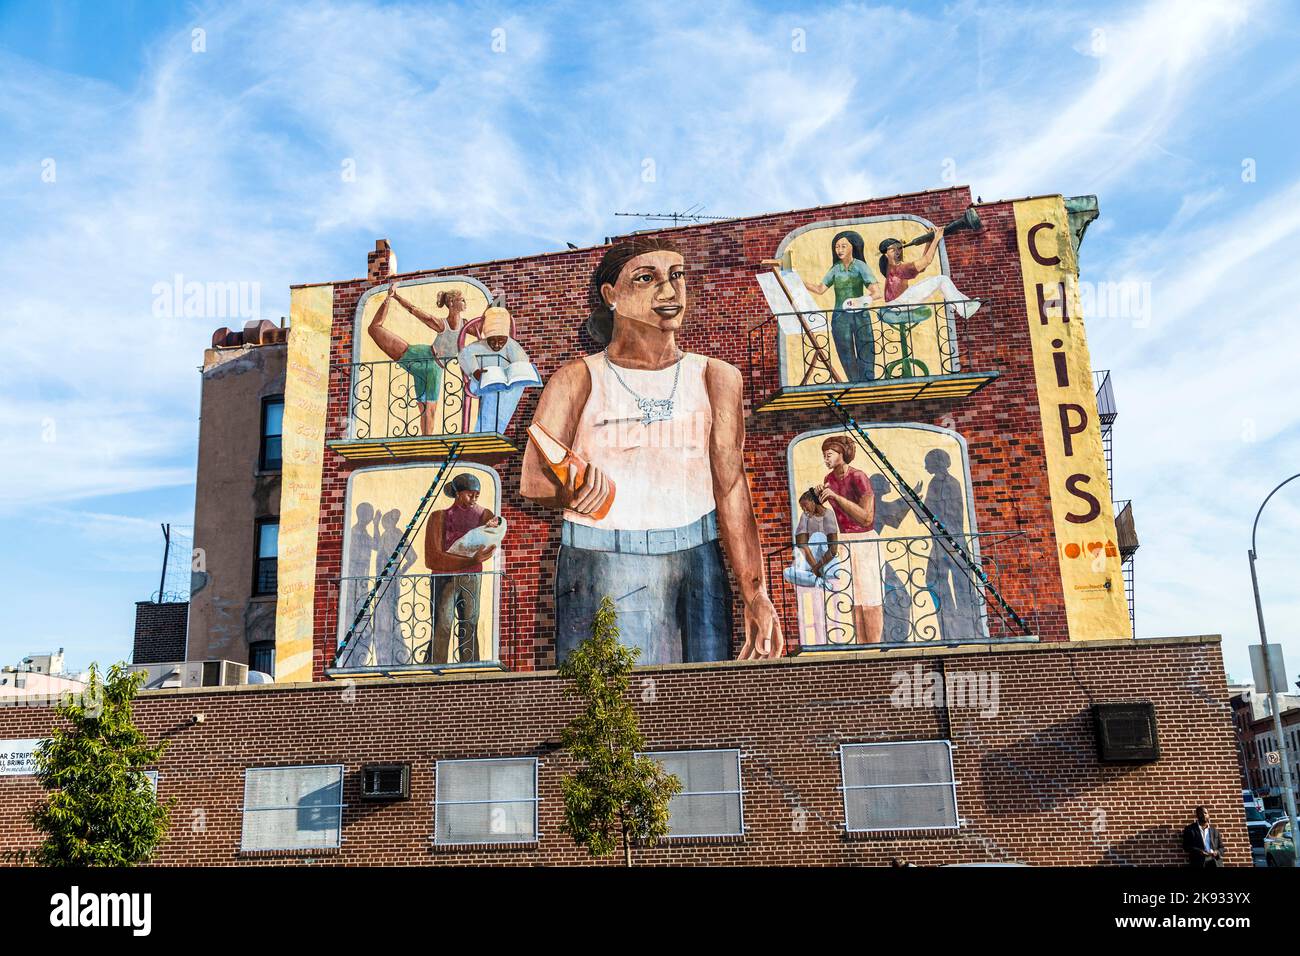 NEW YORK, USA - OCT 21 2015: Bunte Wandmalerei in New York. Besonders in Brooklyn sind Wandmalereien an den alten, nicht restaurierten Häusern üblich. Stockfoto